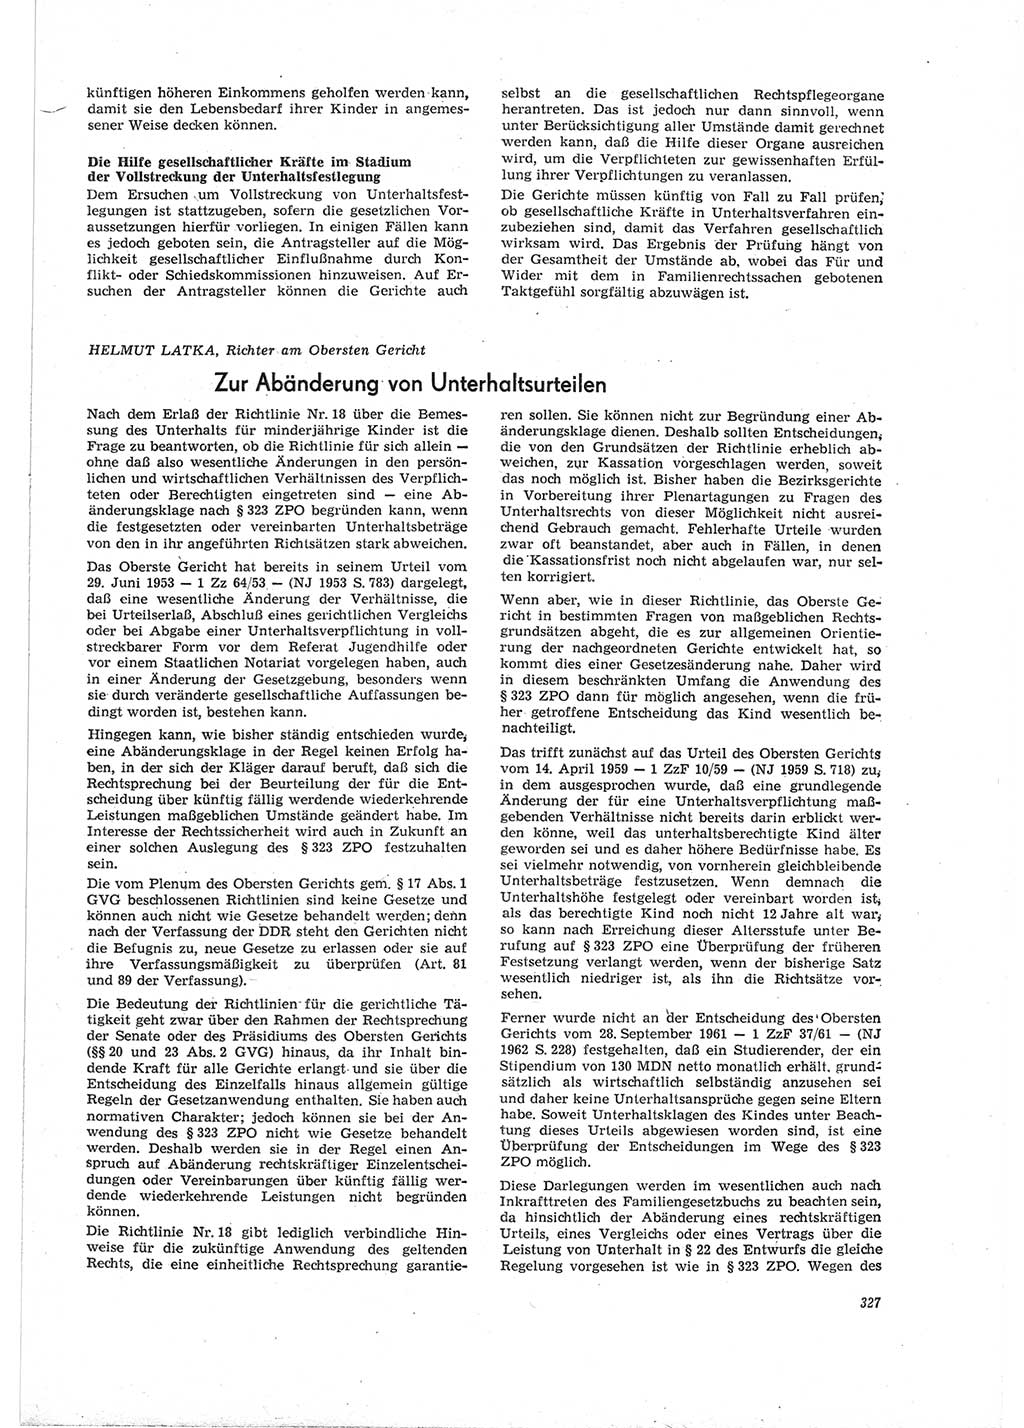 Neue Justiz (NJ), Zeitschrift für Recht und Rechtswissenschaft [Deutsche Demokratische Republik (DDR)], 19. Jahrgang 1965, Seite 327 (NJ DDR 1965, S. 327)